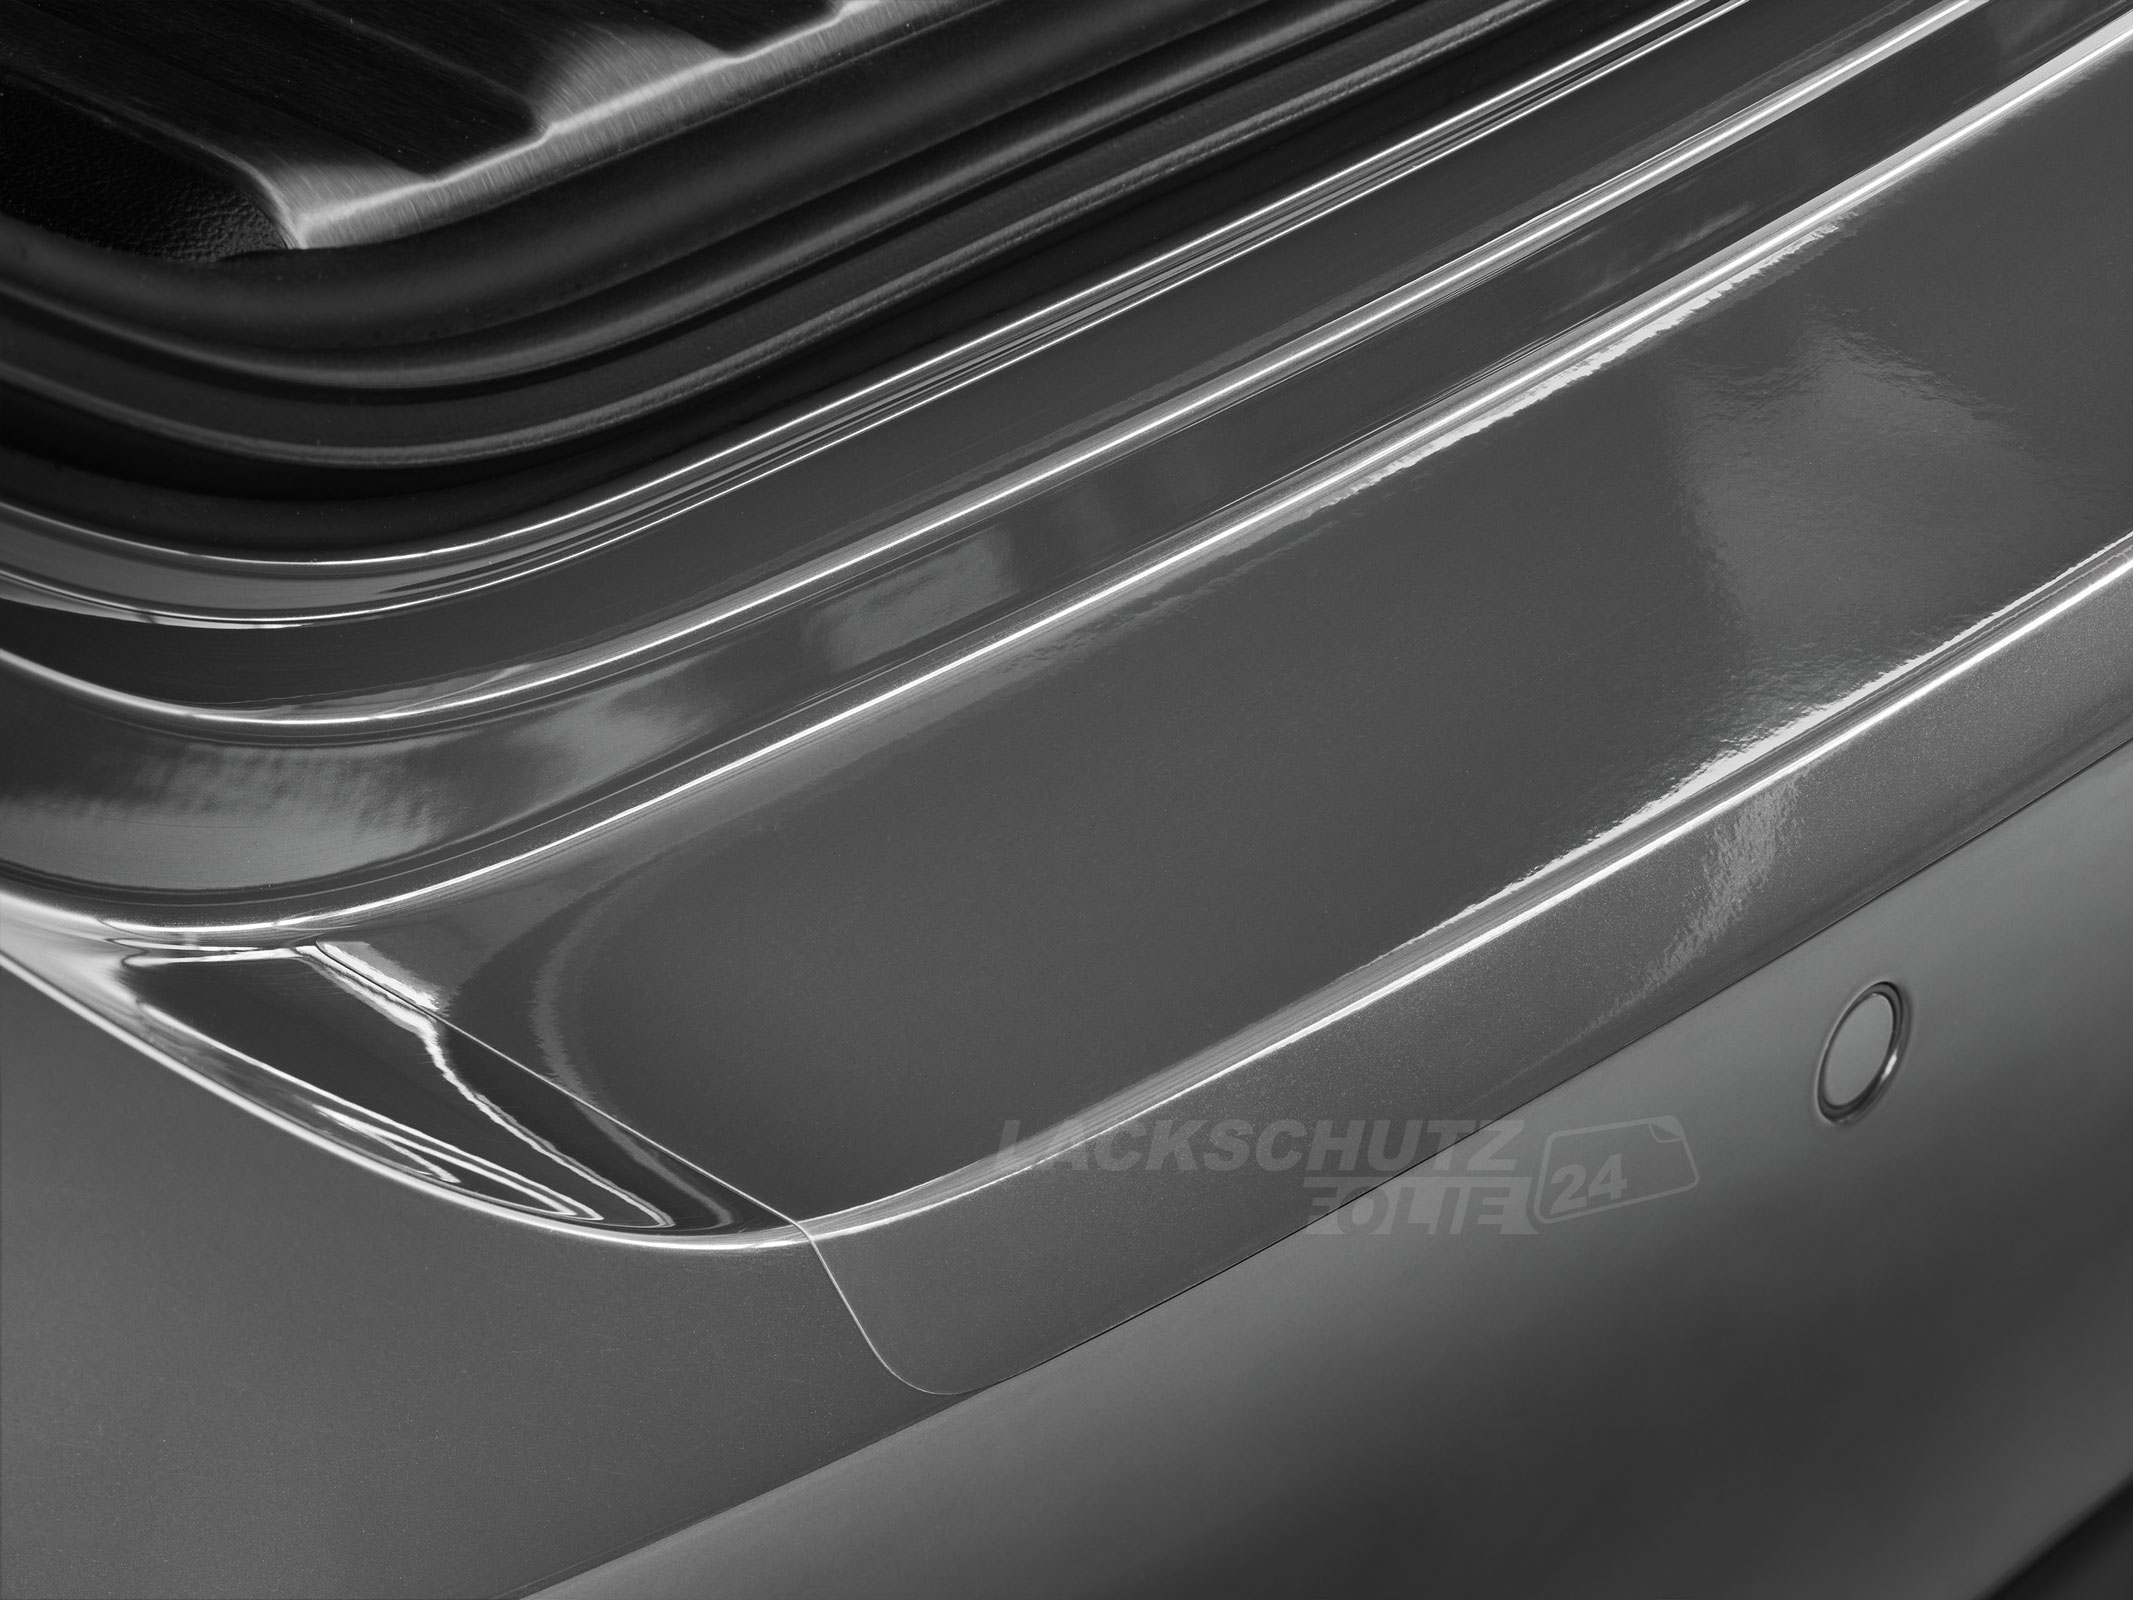 Ladekantenschutzfolie - Transparent Glatt Hochglänzend 150 µm stark für VW / Volkswagen T4  bis BJ 2003